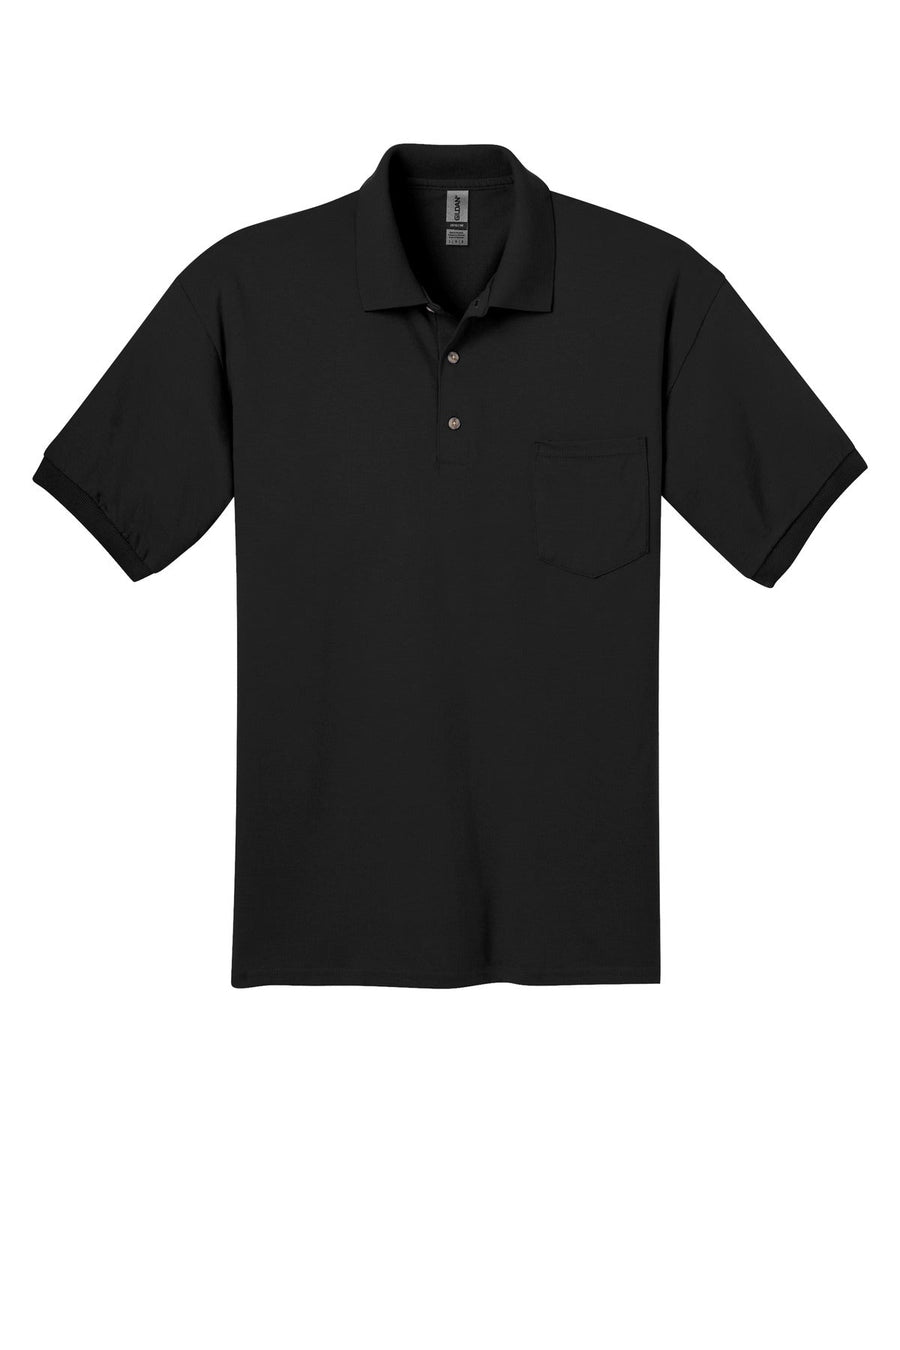 Gildan DryBlend 6-Ounce Jersey Knit Sport Shirt with Pocket